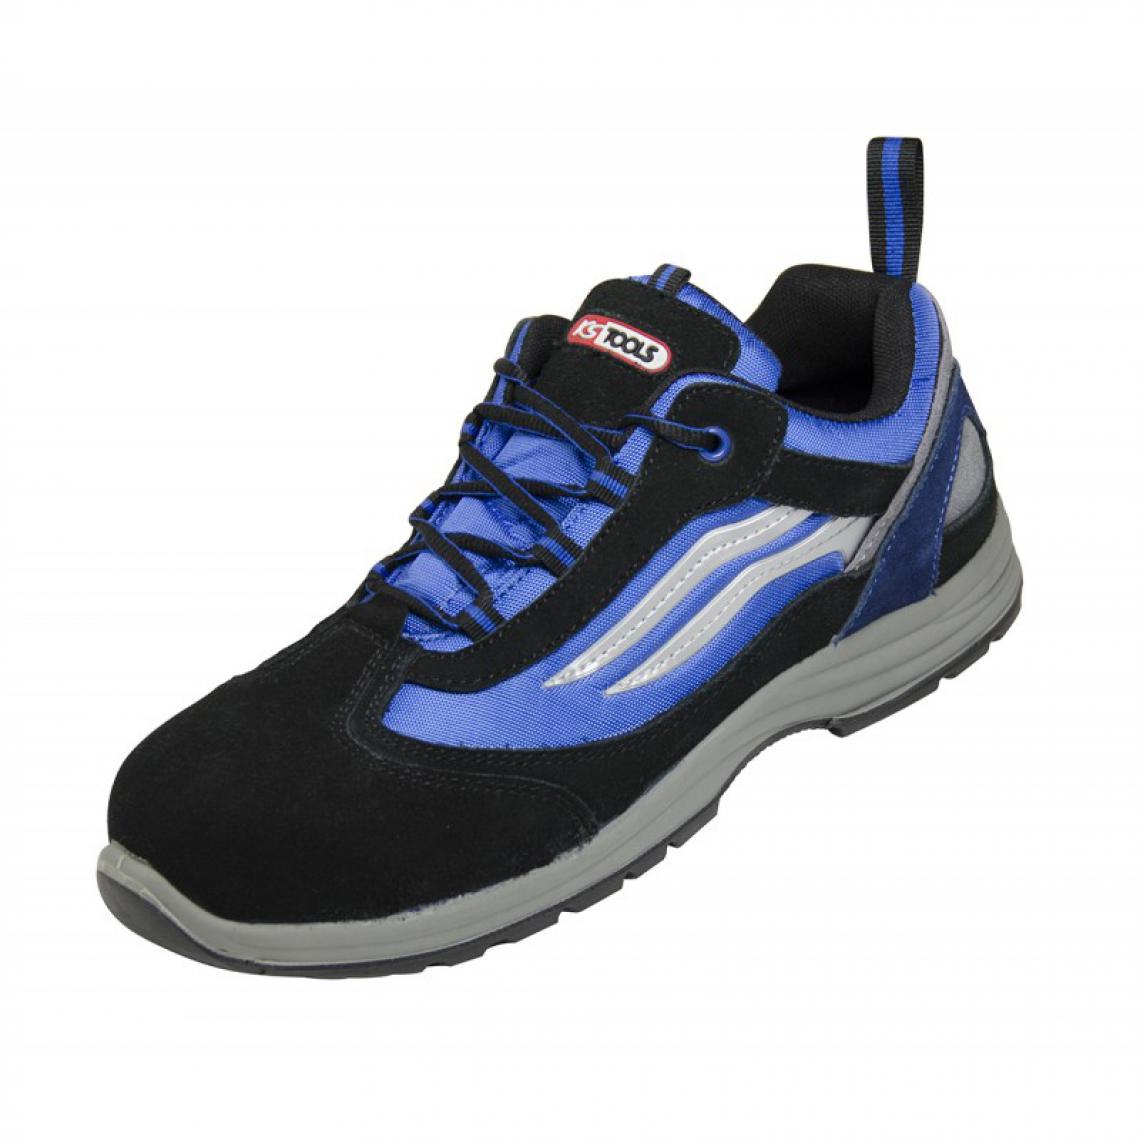 Kstools - Chaussures de sécurité KSTOOLS Couleur bleue et noire taille 45 - Equipement de Protection Individuelle